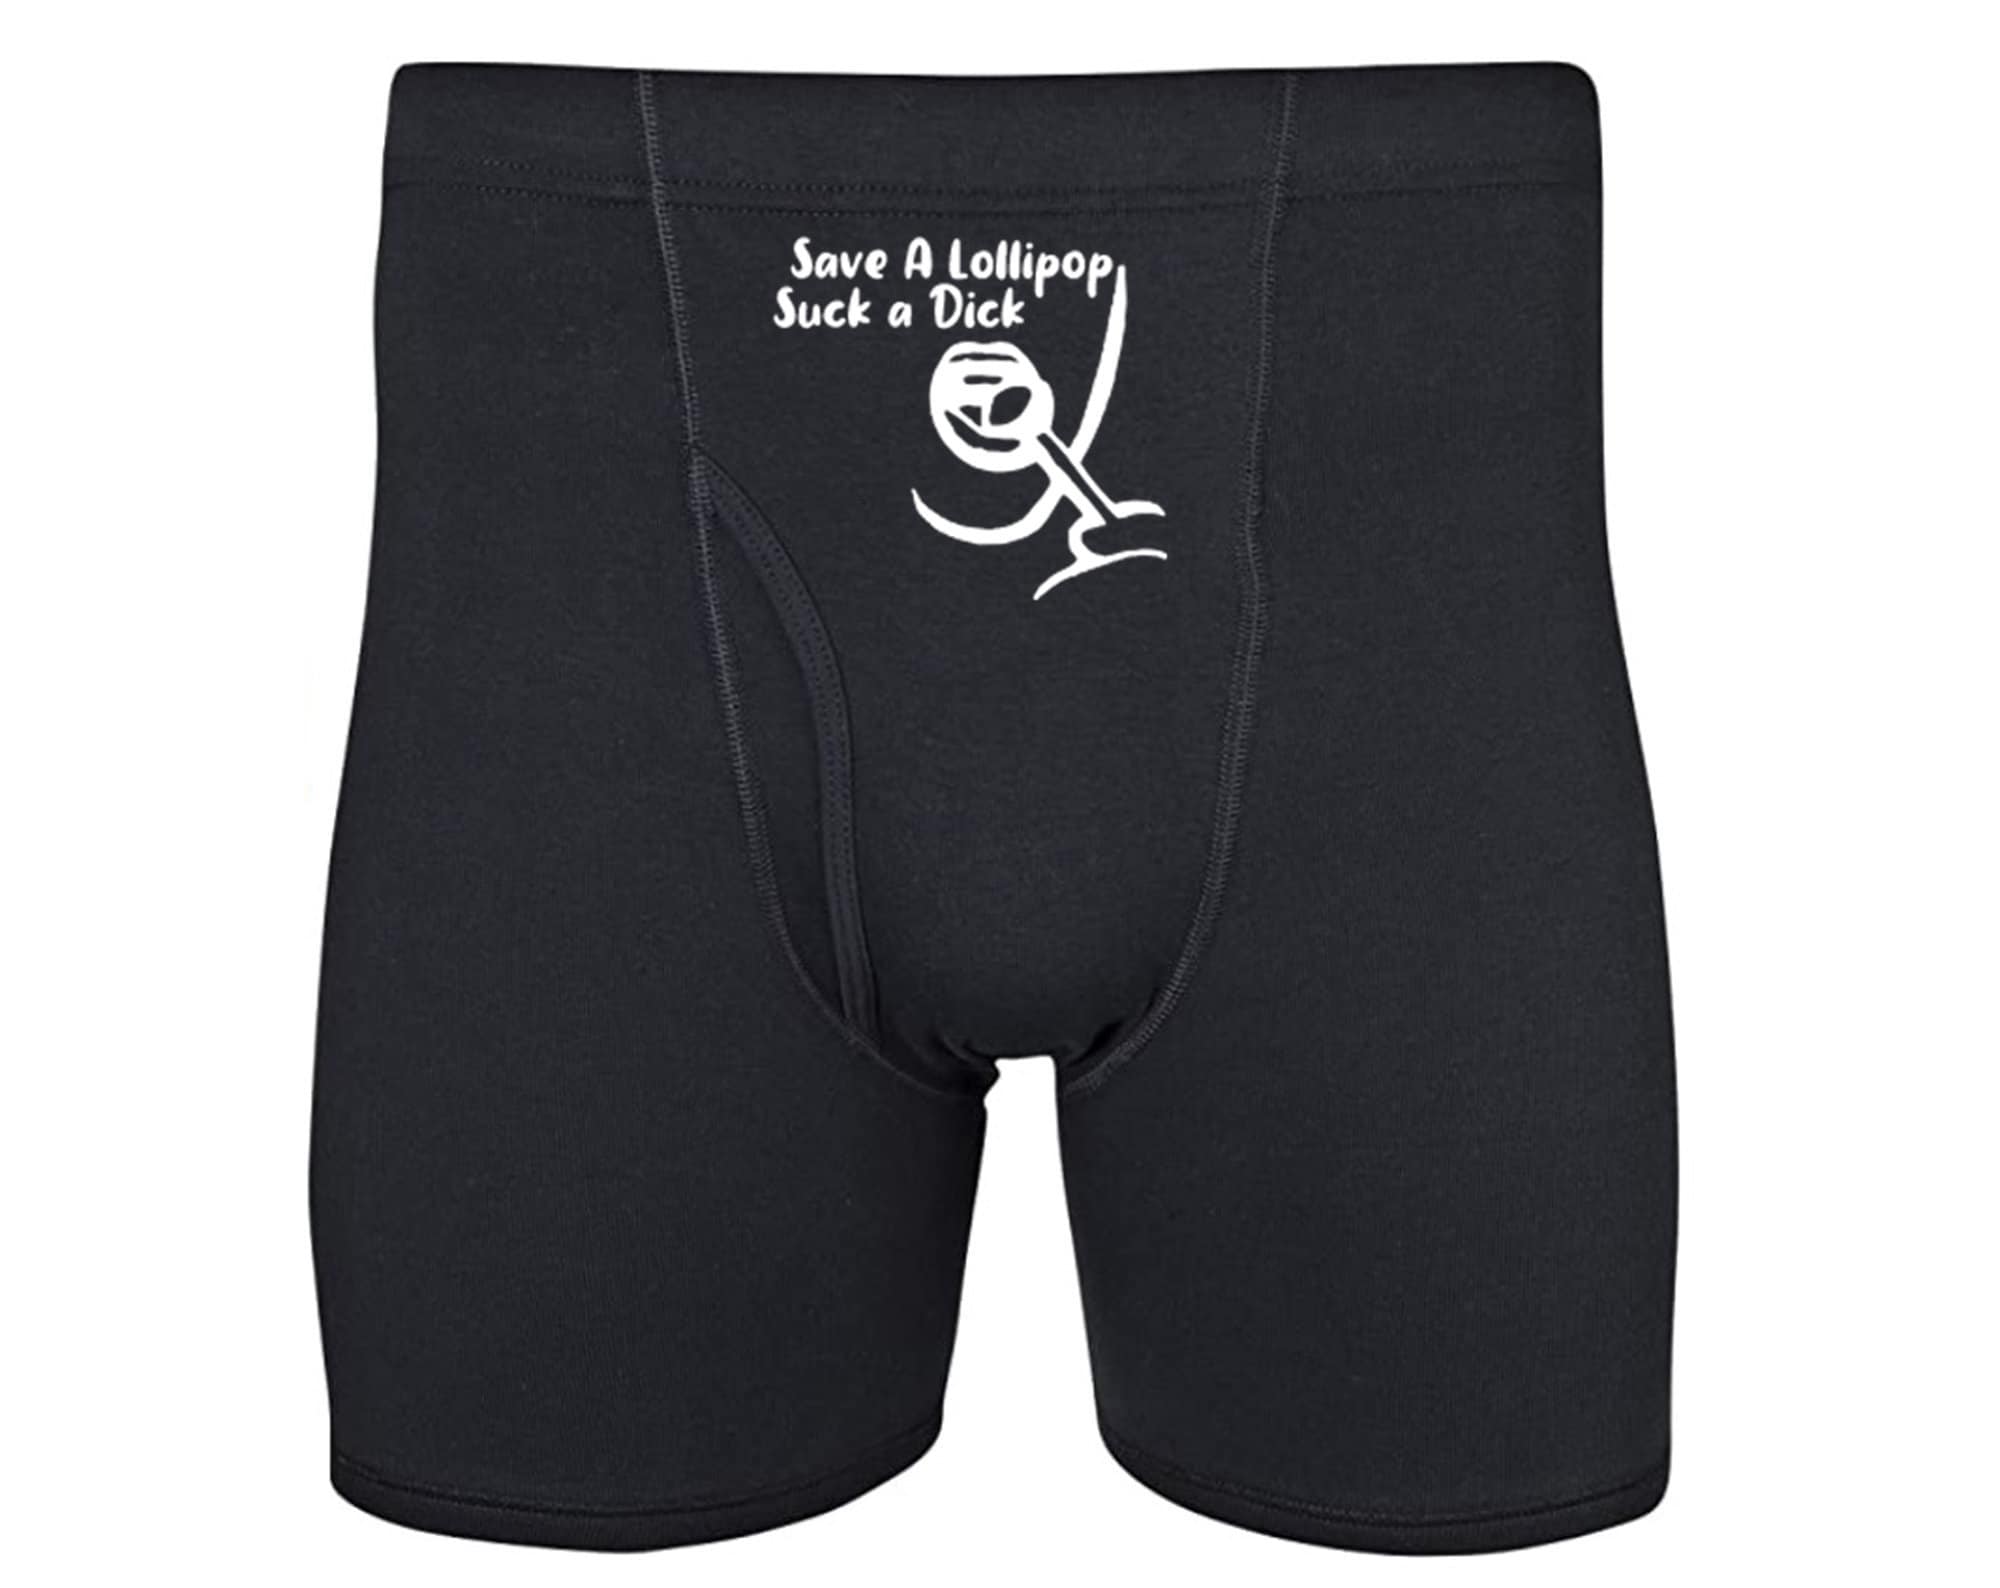 Save a Lollipop Suck a Dick Herren Boxershorts Lustige Unterwäsche für  Männer Sexy Unterhose -  Schweiz